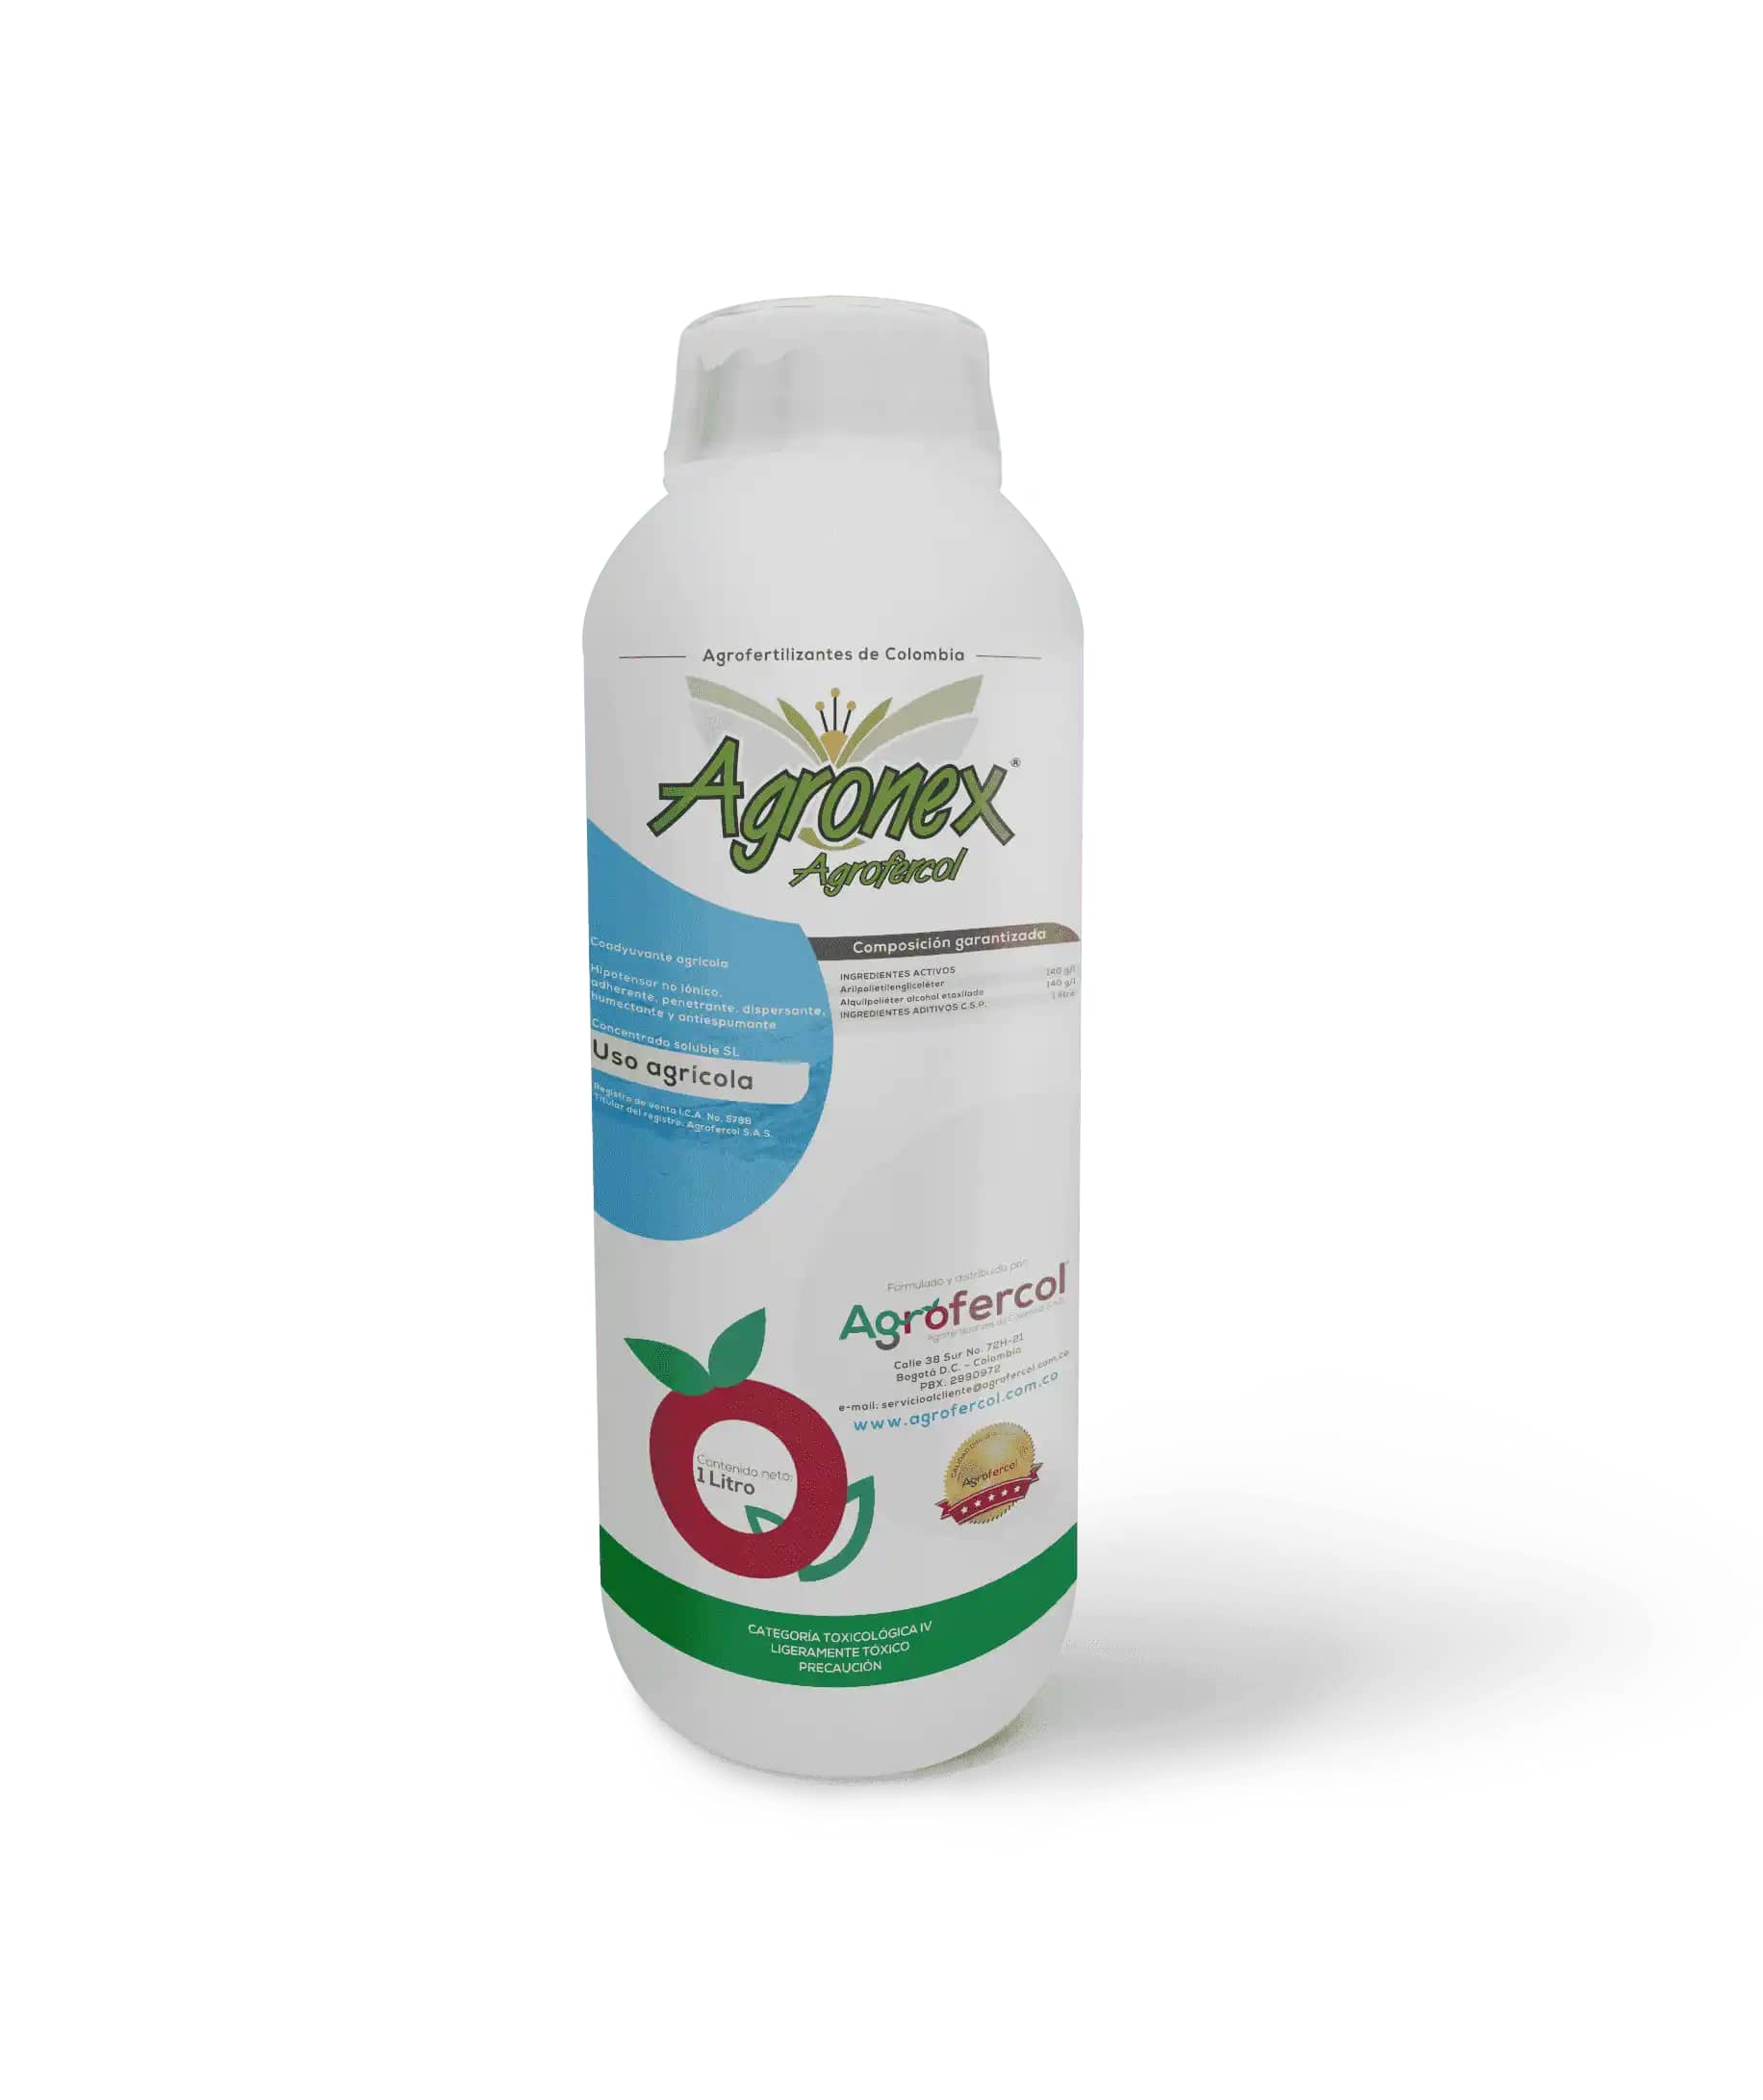 Agronex coadyuvante tensoactivo y antiespumante  Agrofercol